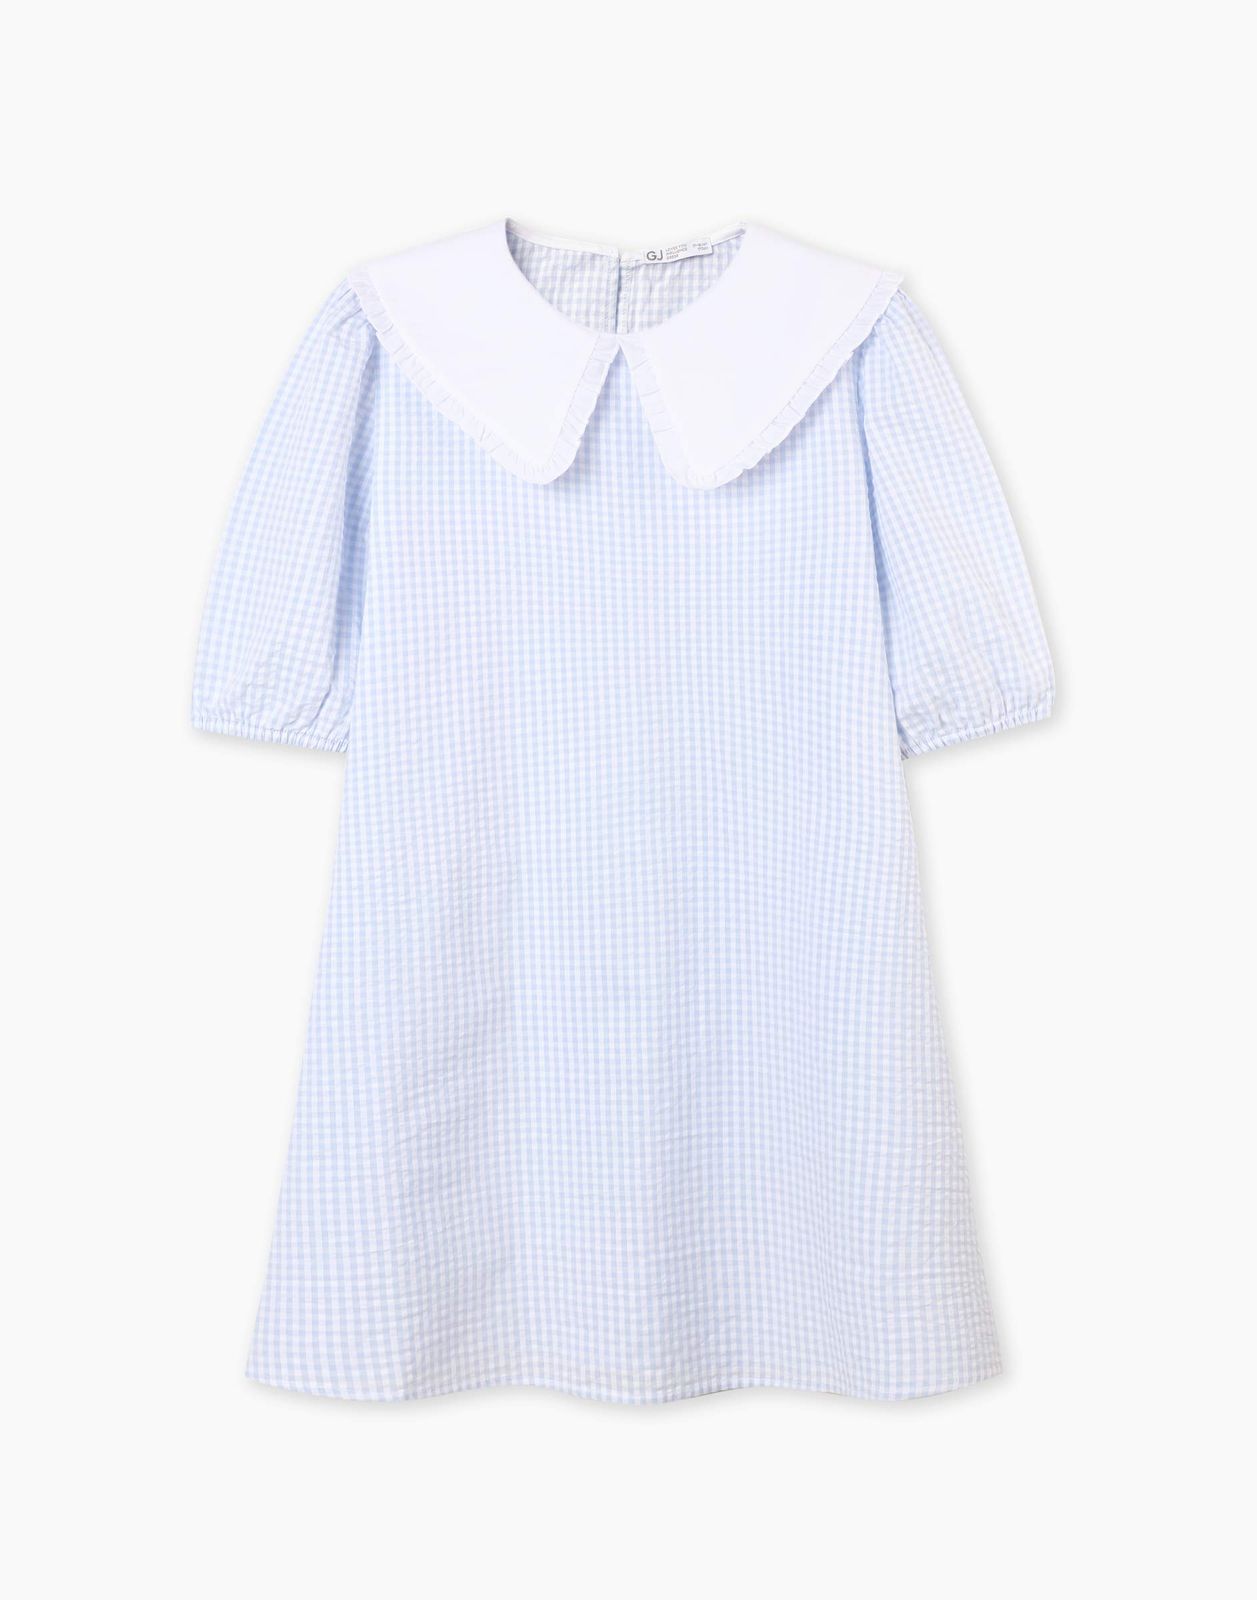 Платье детское Gloria Jeans GDR028214, голубой/белый, 146